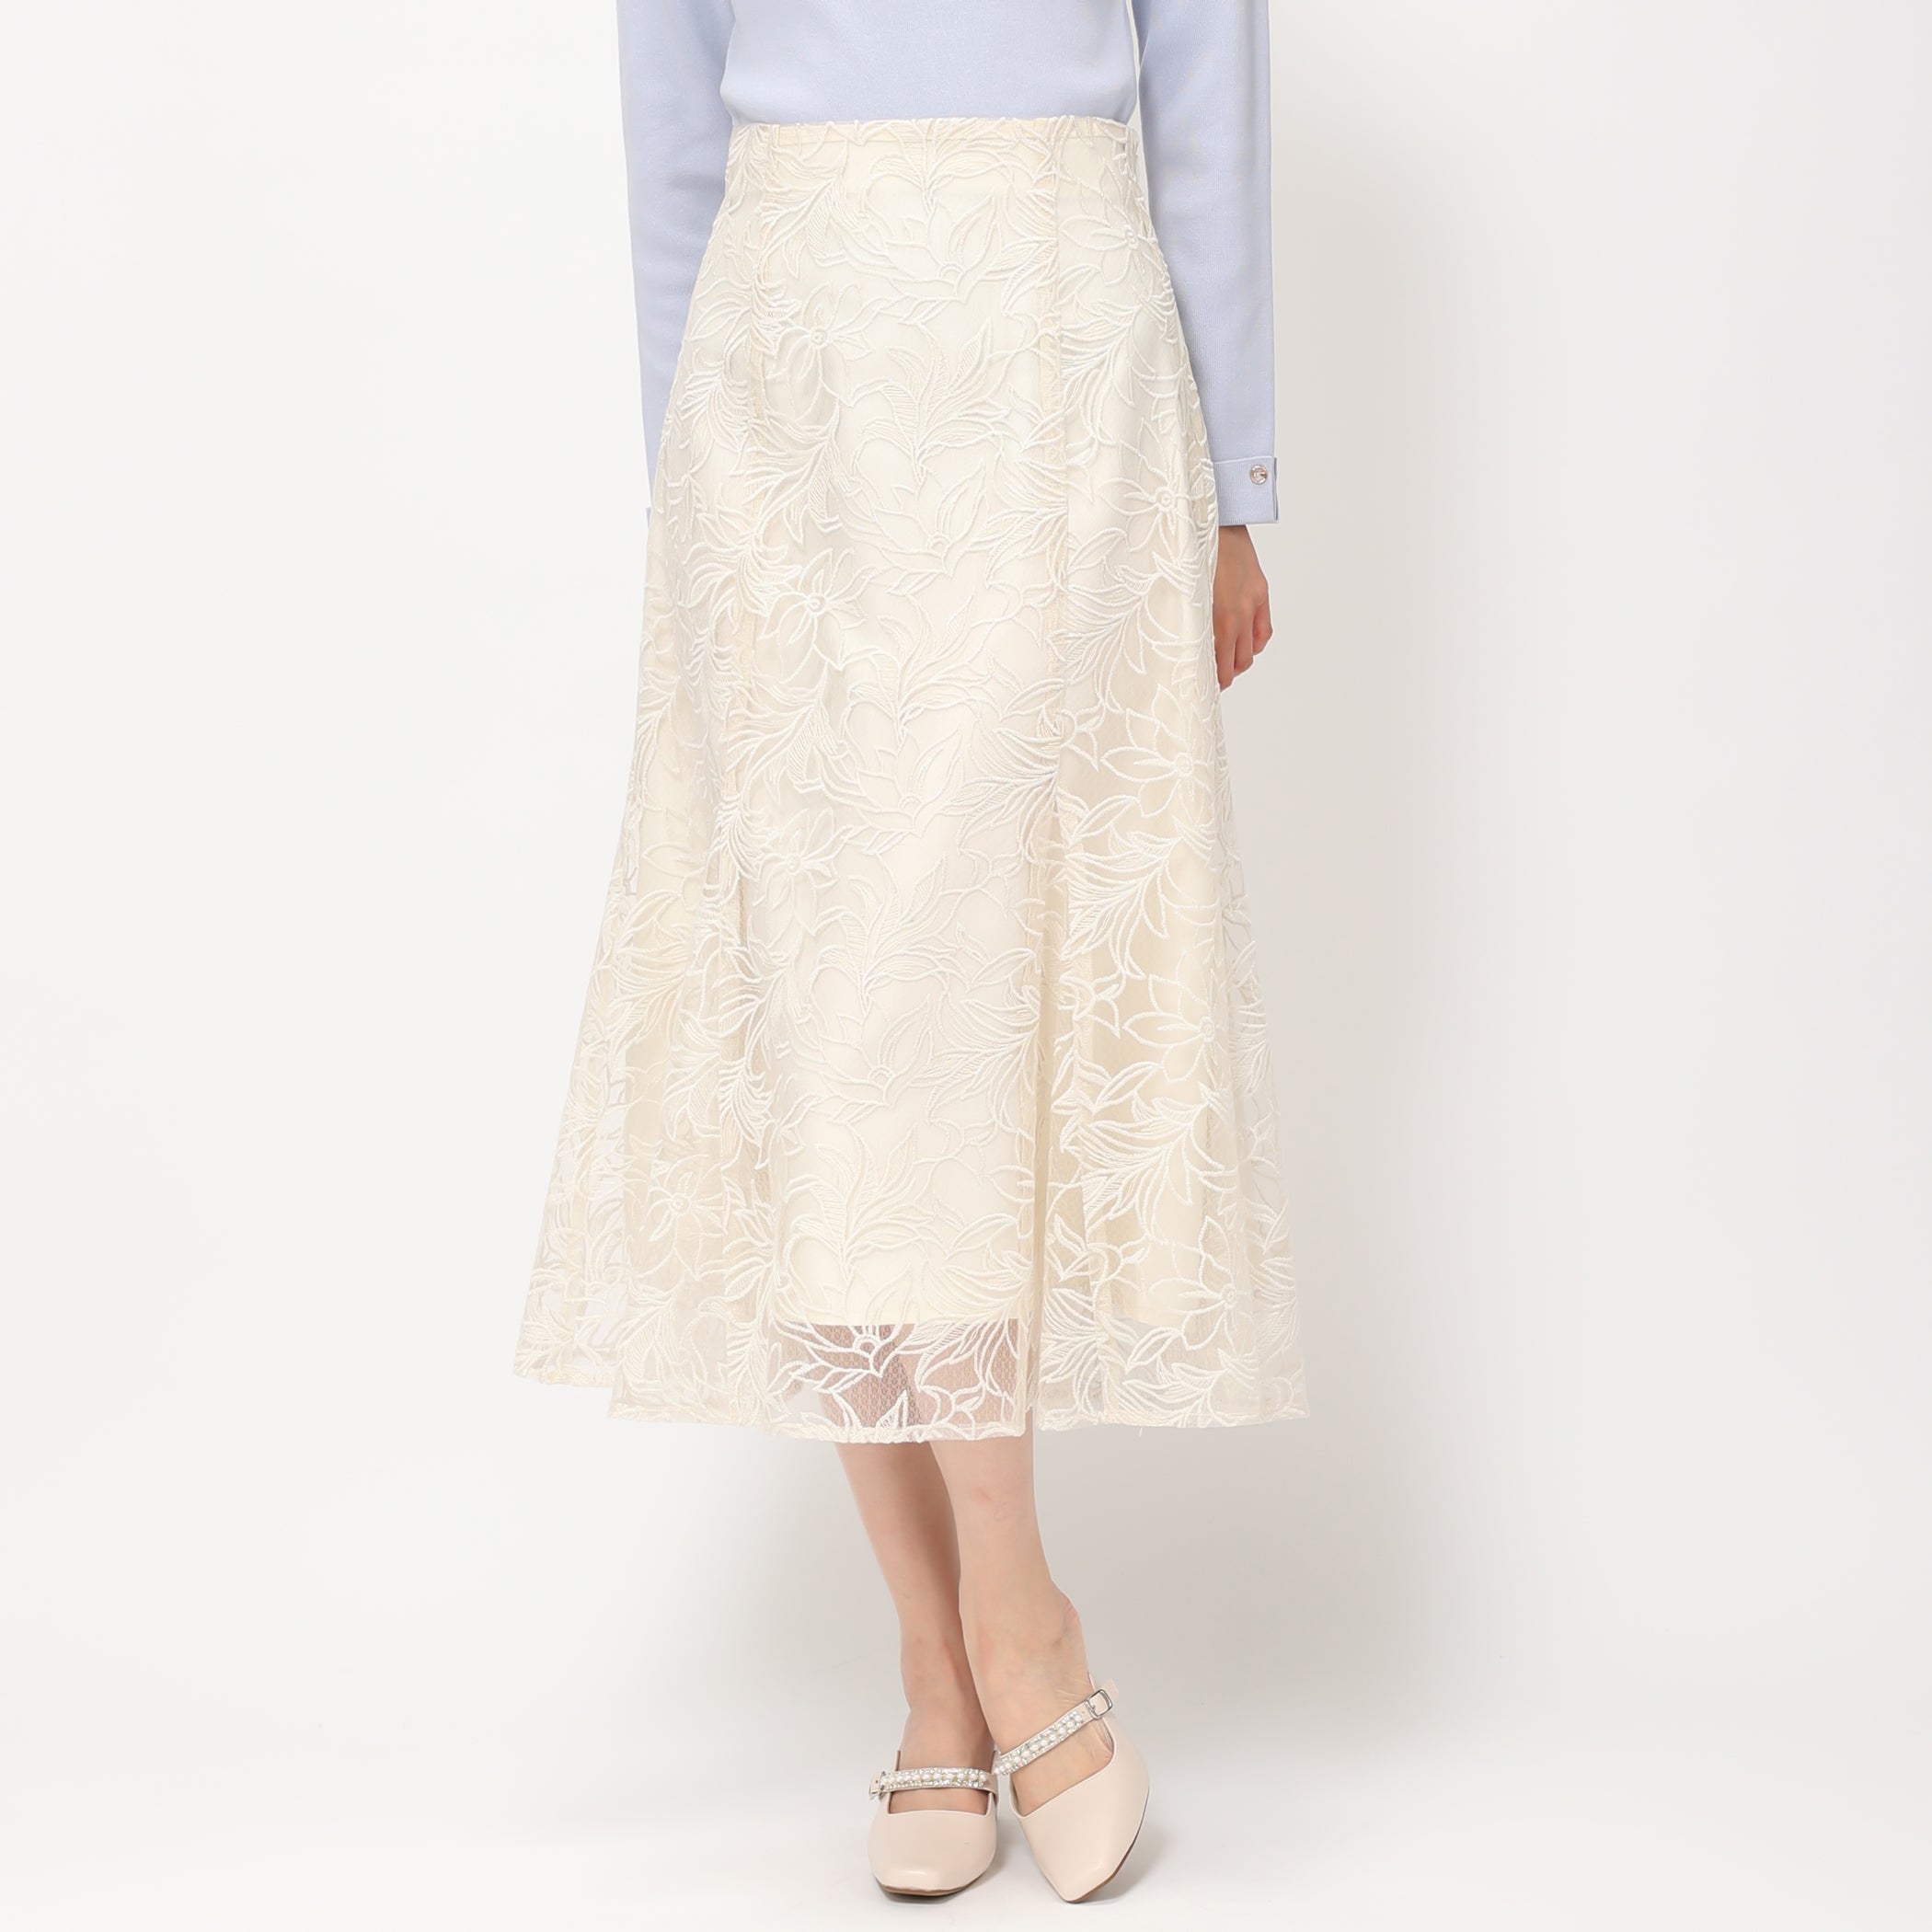 【予約販売】フラワー刺繍スカート/MM417211 (アイボリー)